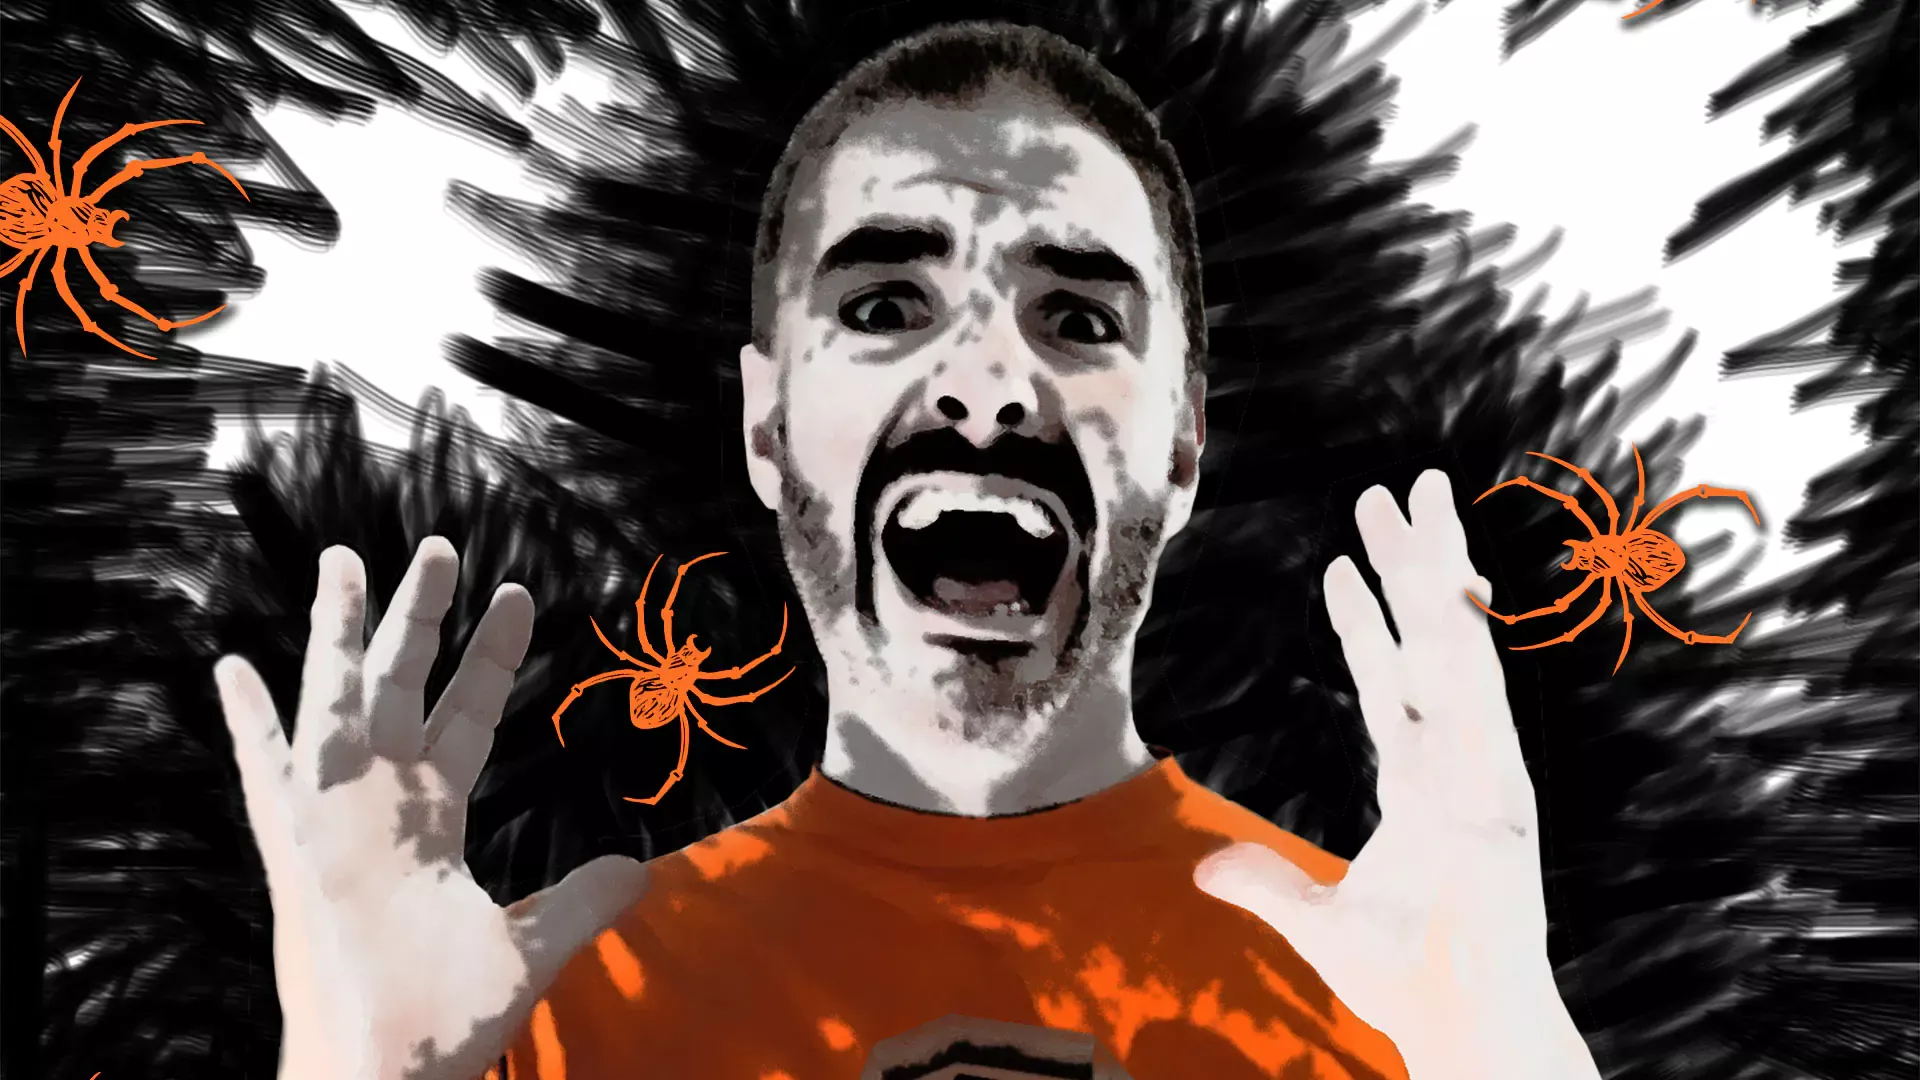 Bannière Halloween 2022 Des araignées dans les salles - Escape Game Montauban S Room Agency